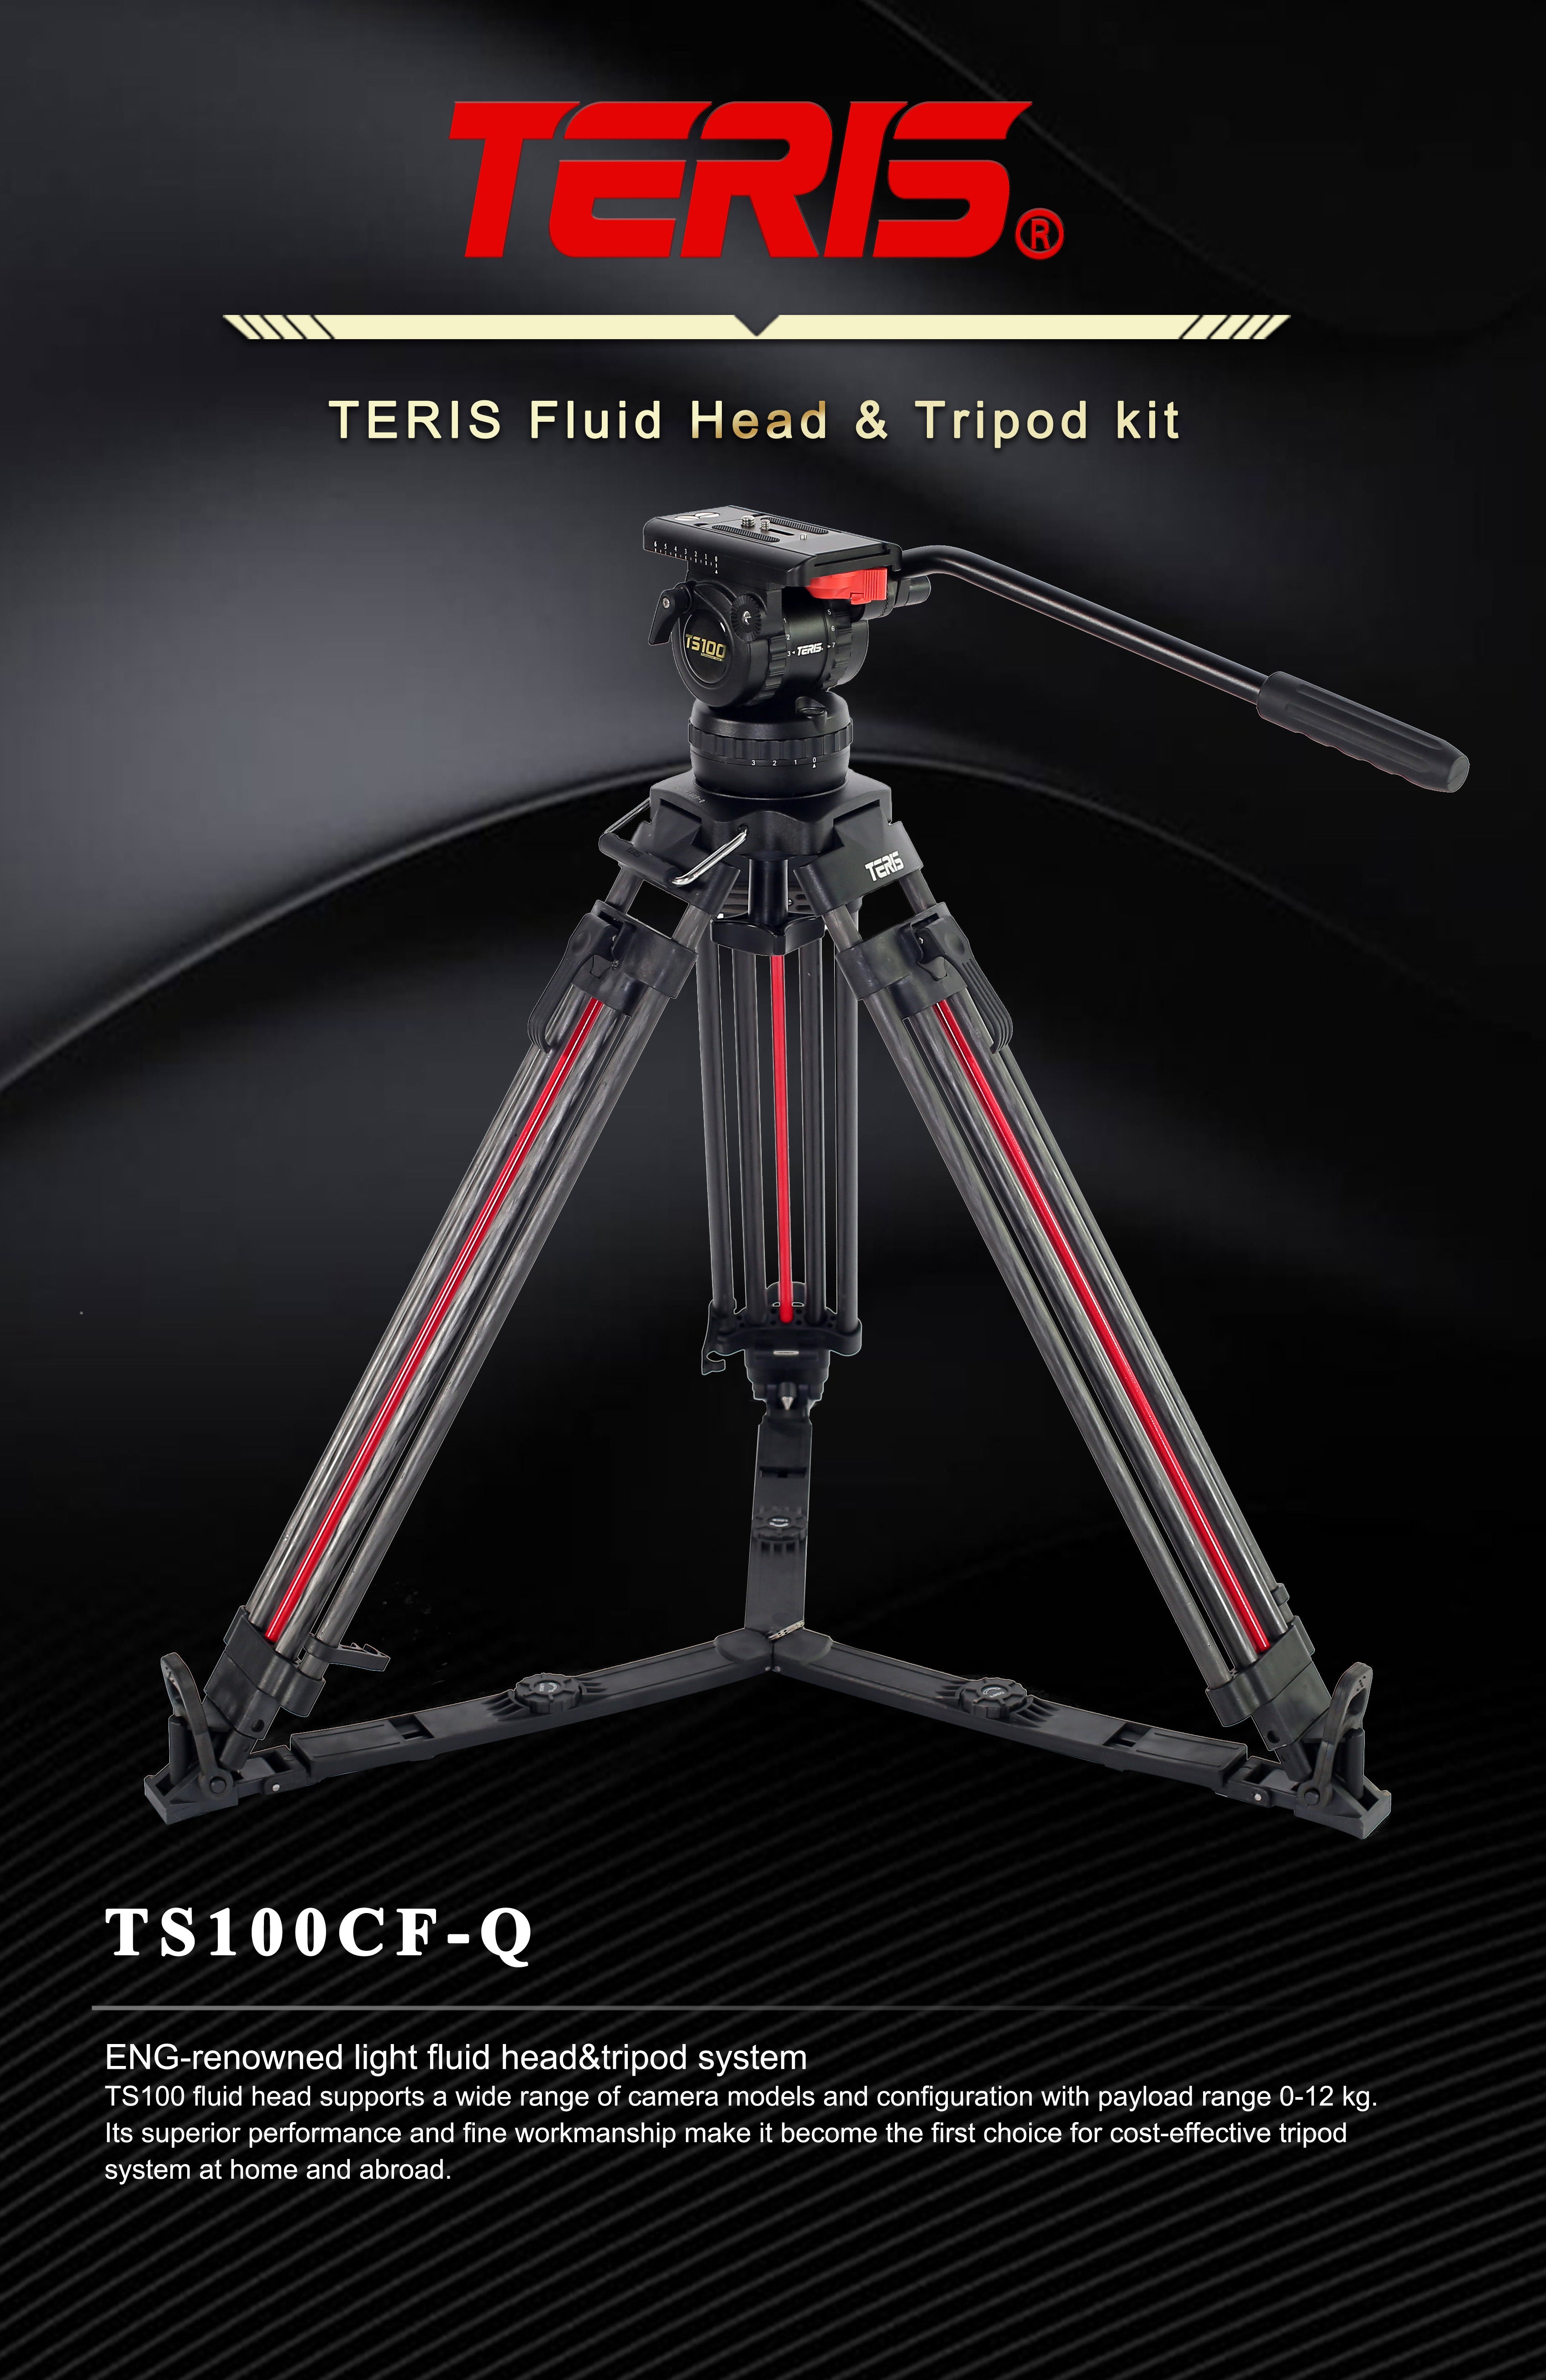 Teris TS100CF-Q Carbon Fiber Tripod Kit 12kg (26.5lb) Capacity 100mm Bowl Head with Flap Lock Quick Release 1